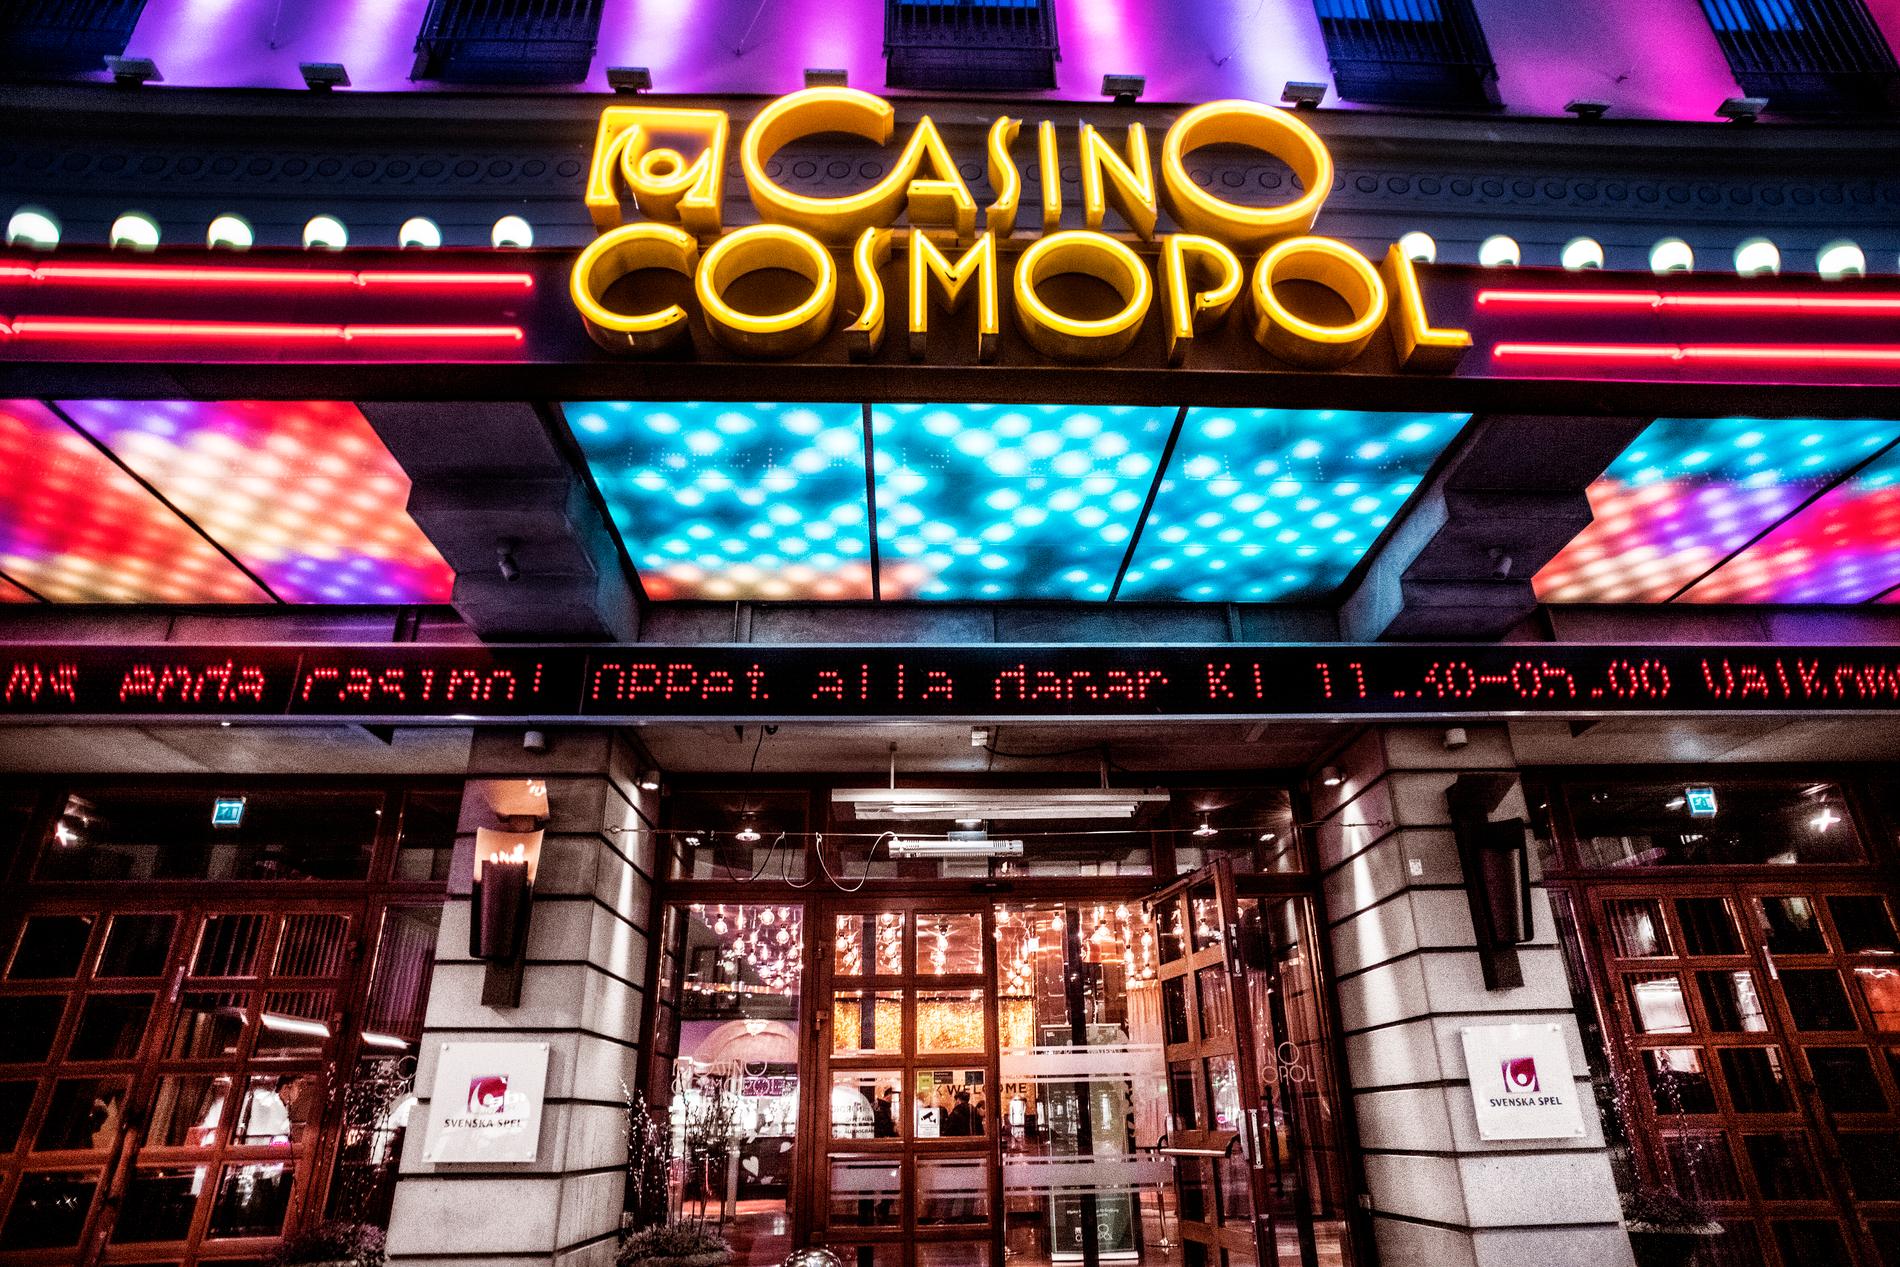 Casino Cosmopol i Stockholm.